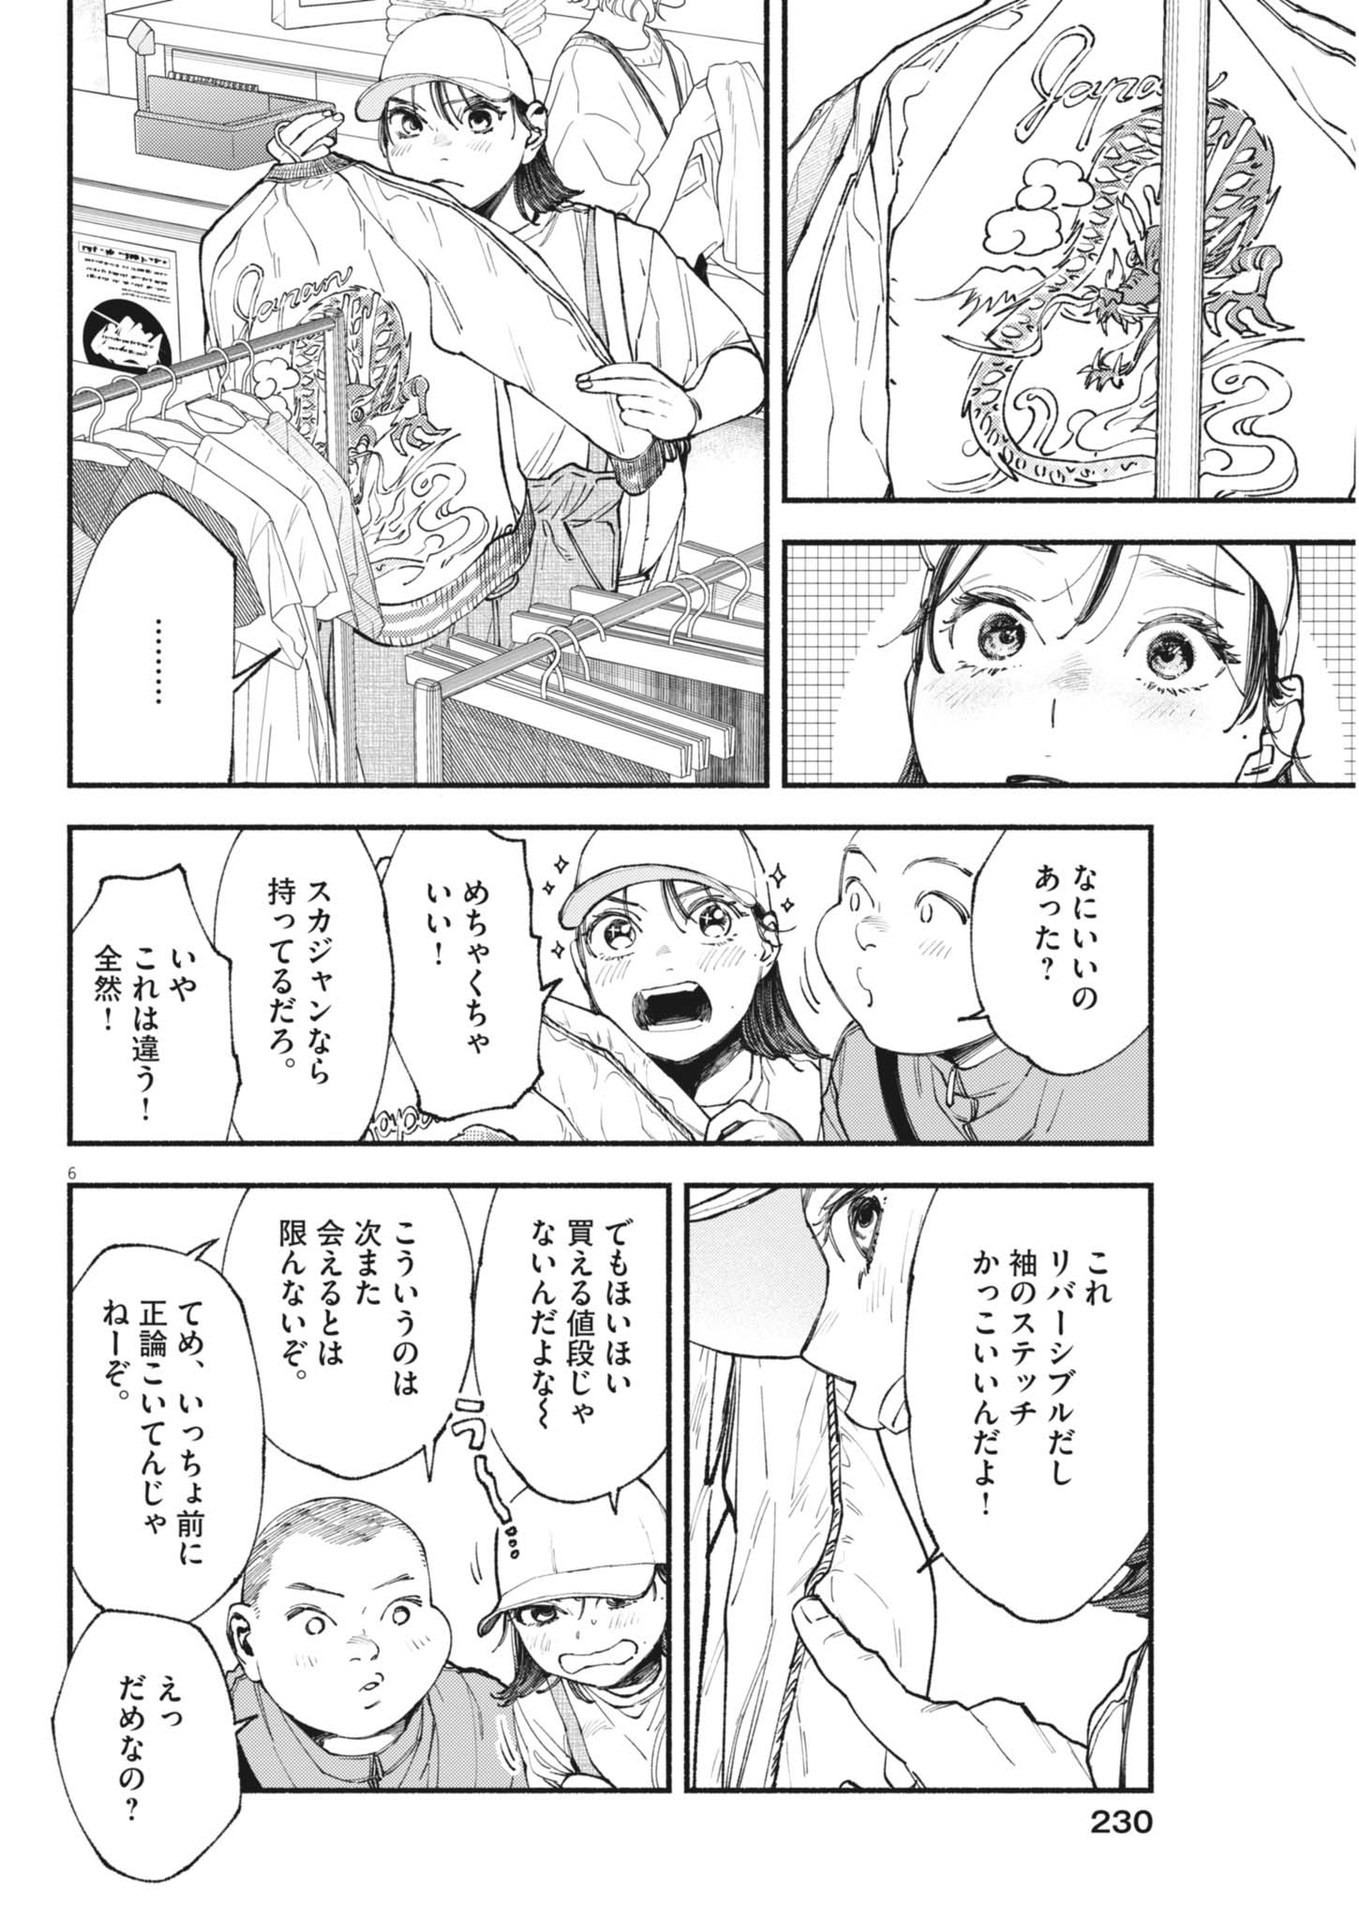 Konoyo wa Tatakau Kachi ga Aru  - Chapter 27 - Page 6